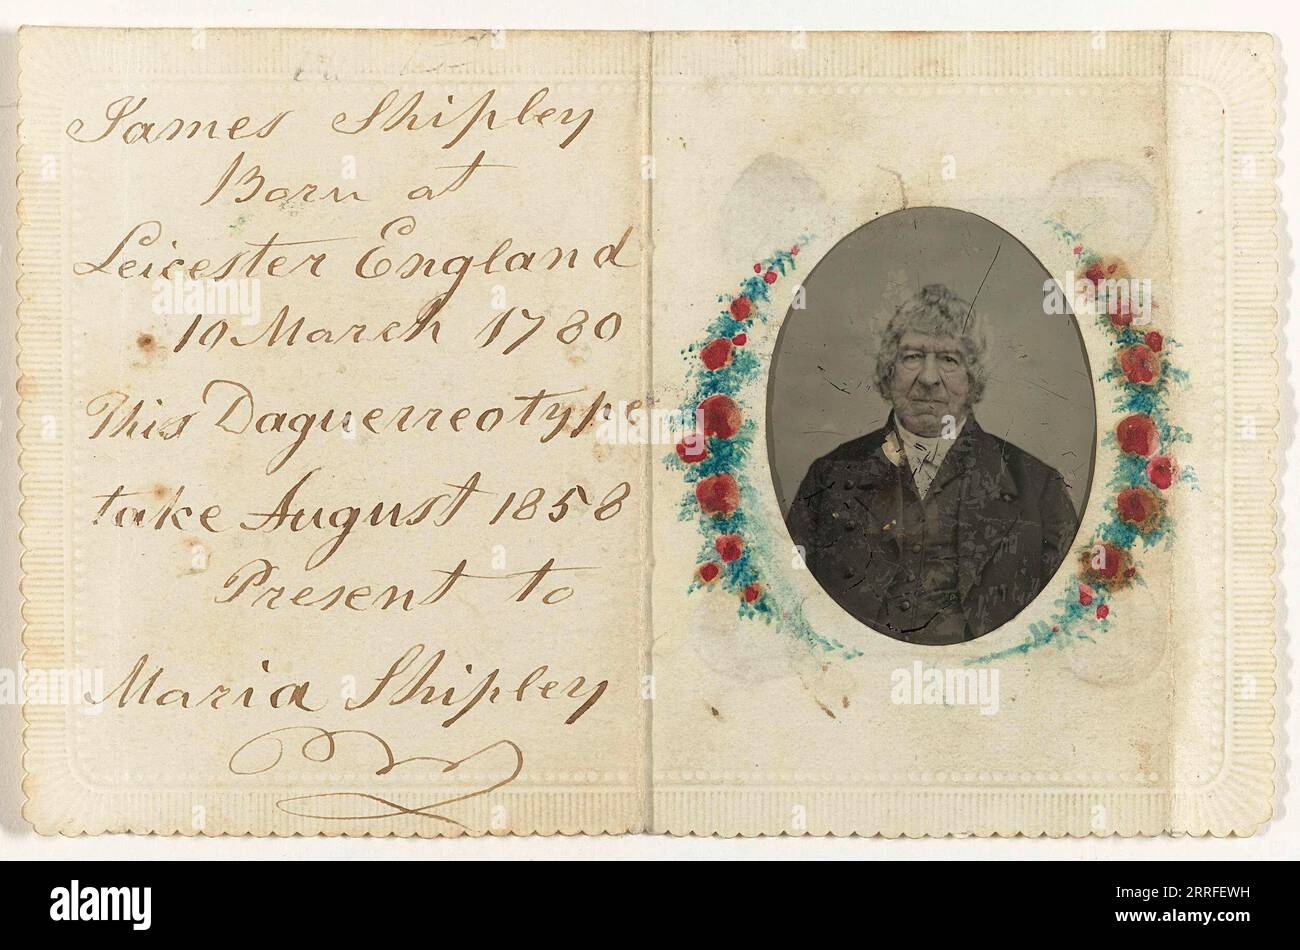 Portrait de James Shipley (copie d'une photo) de 1858 Banque D'Images